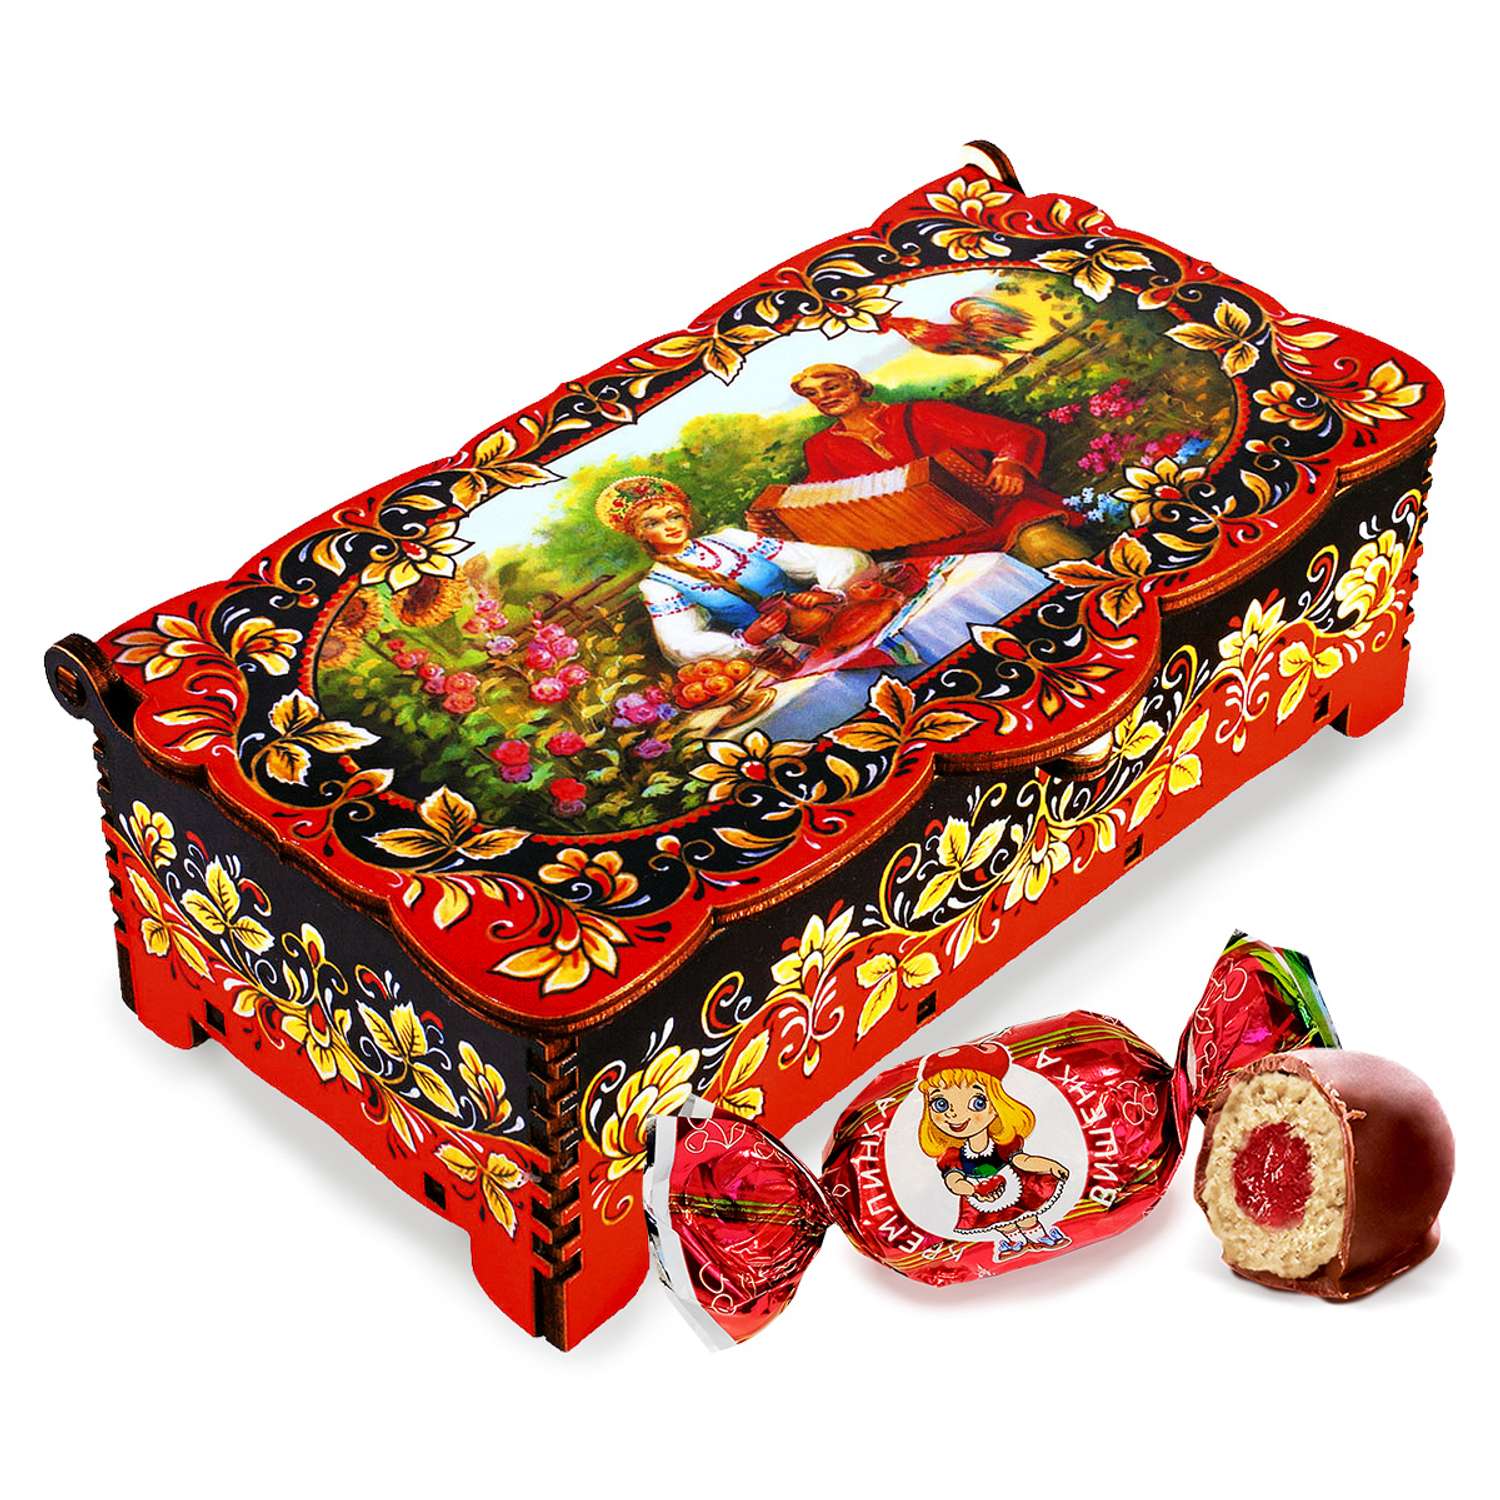 Конфеты Вишенка Кремлина с джемом в глазури в подарочной резной шкатулке Гармонист 150 г - фото 6